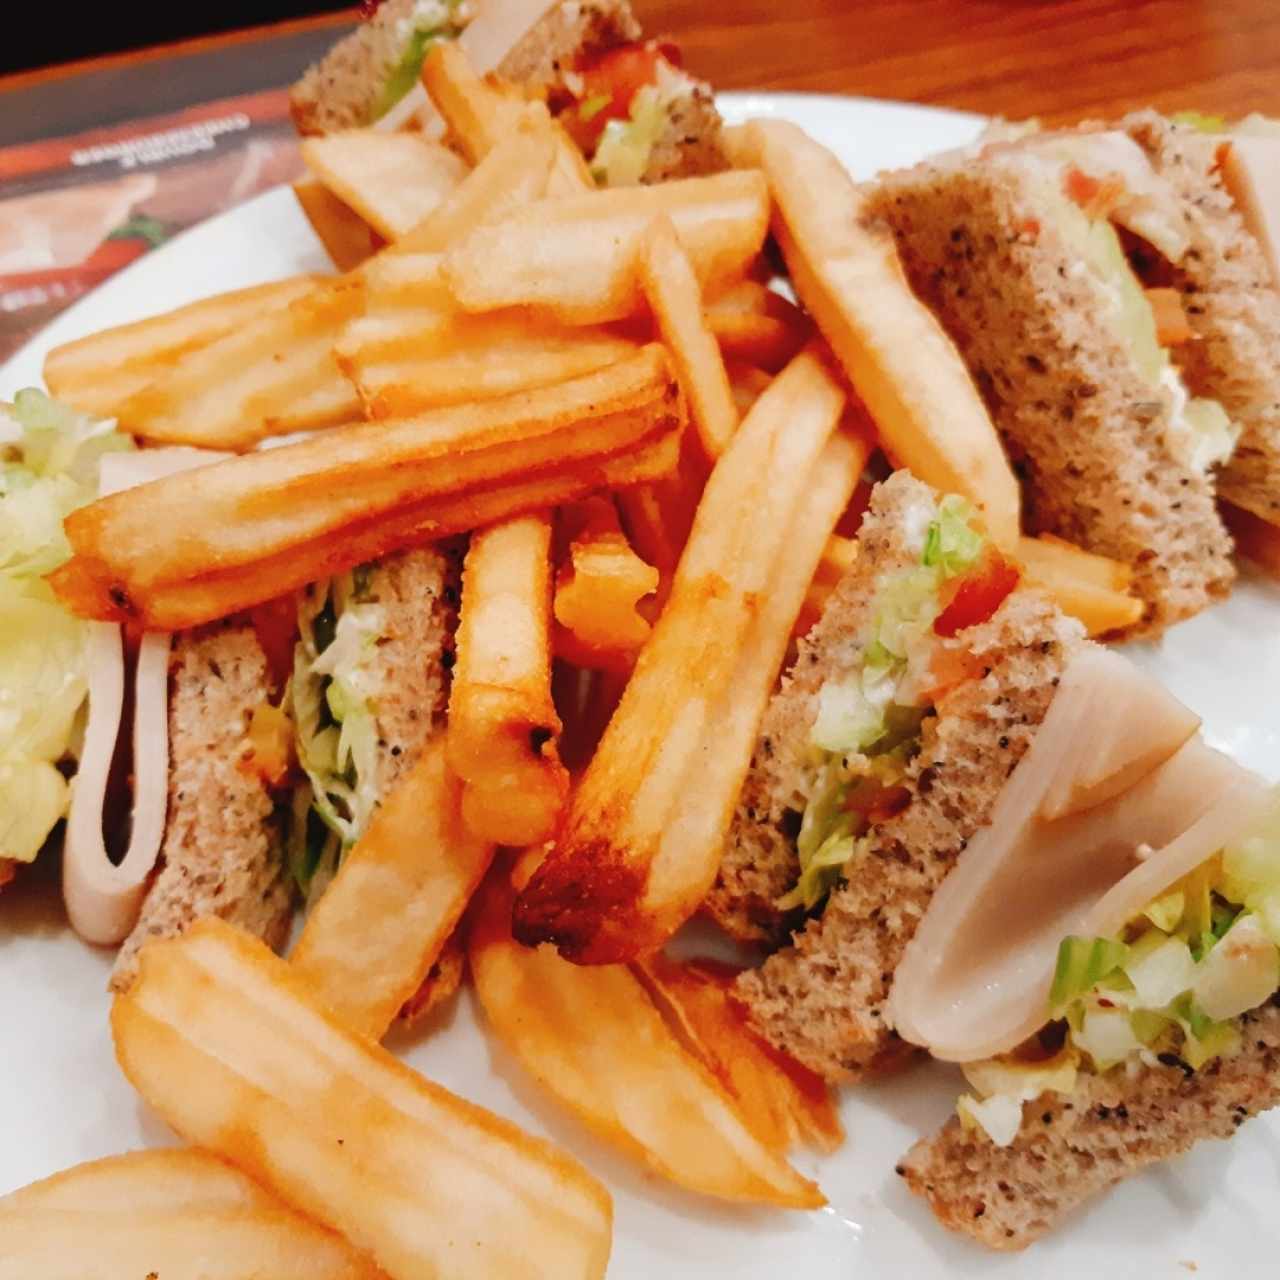 SÁNDWICHES - Club Sandwich